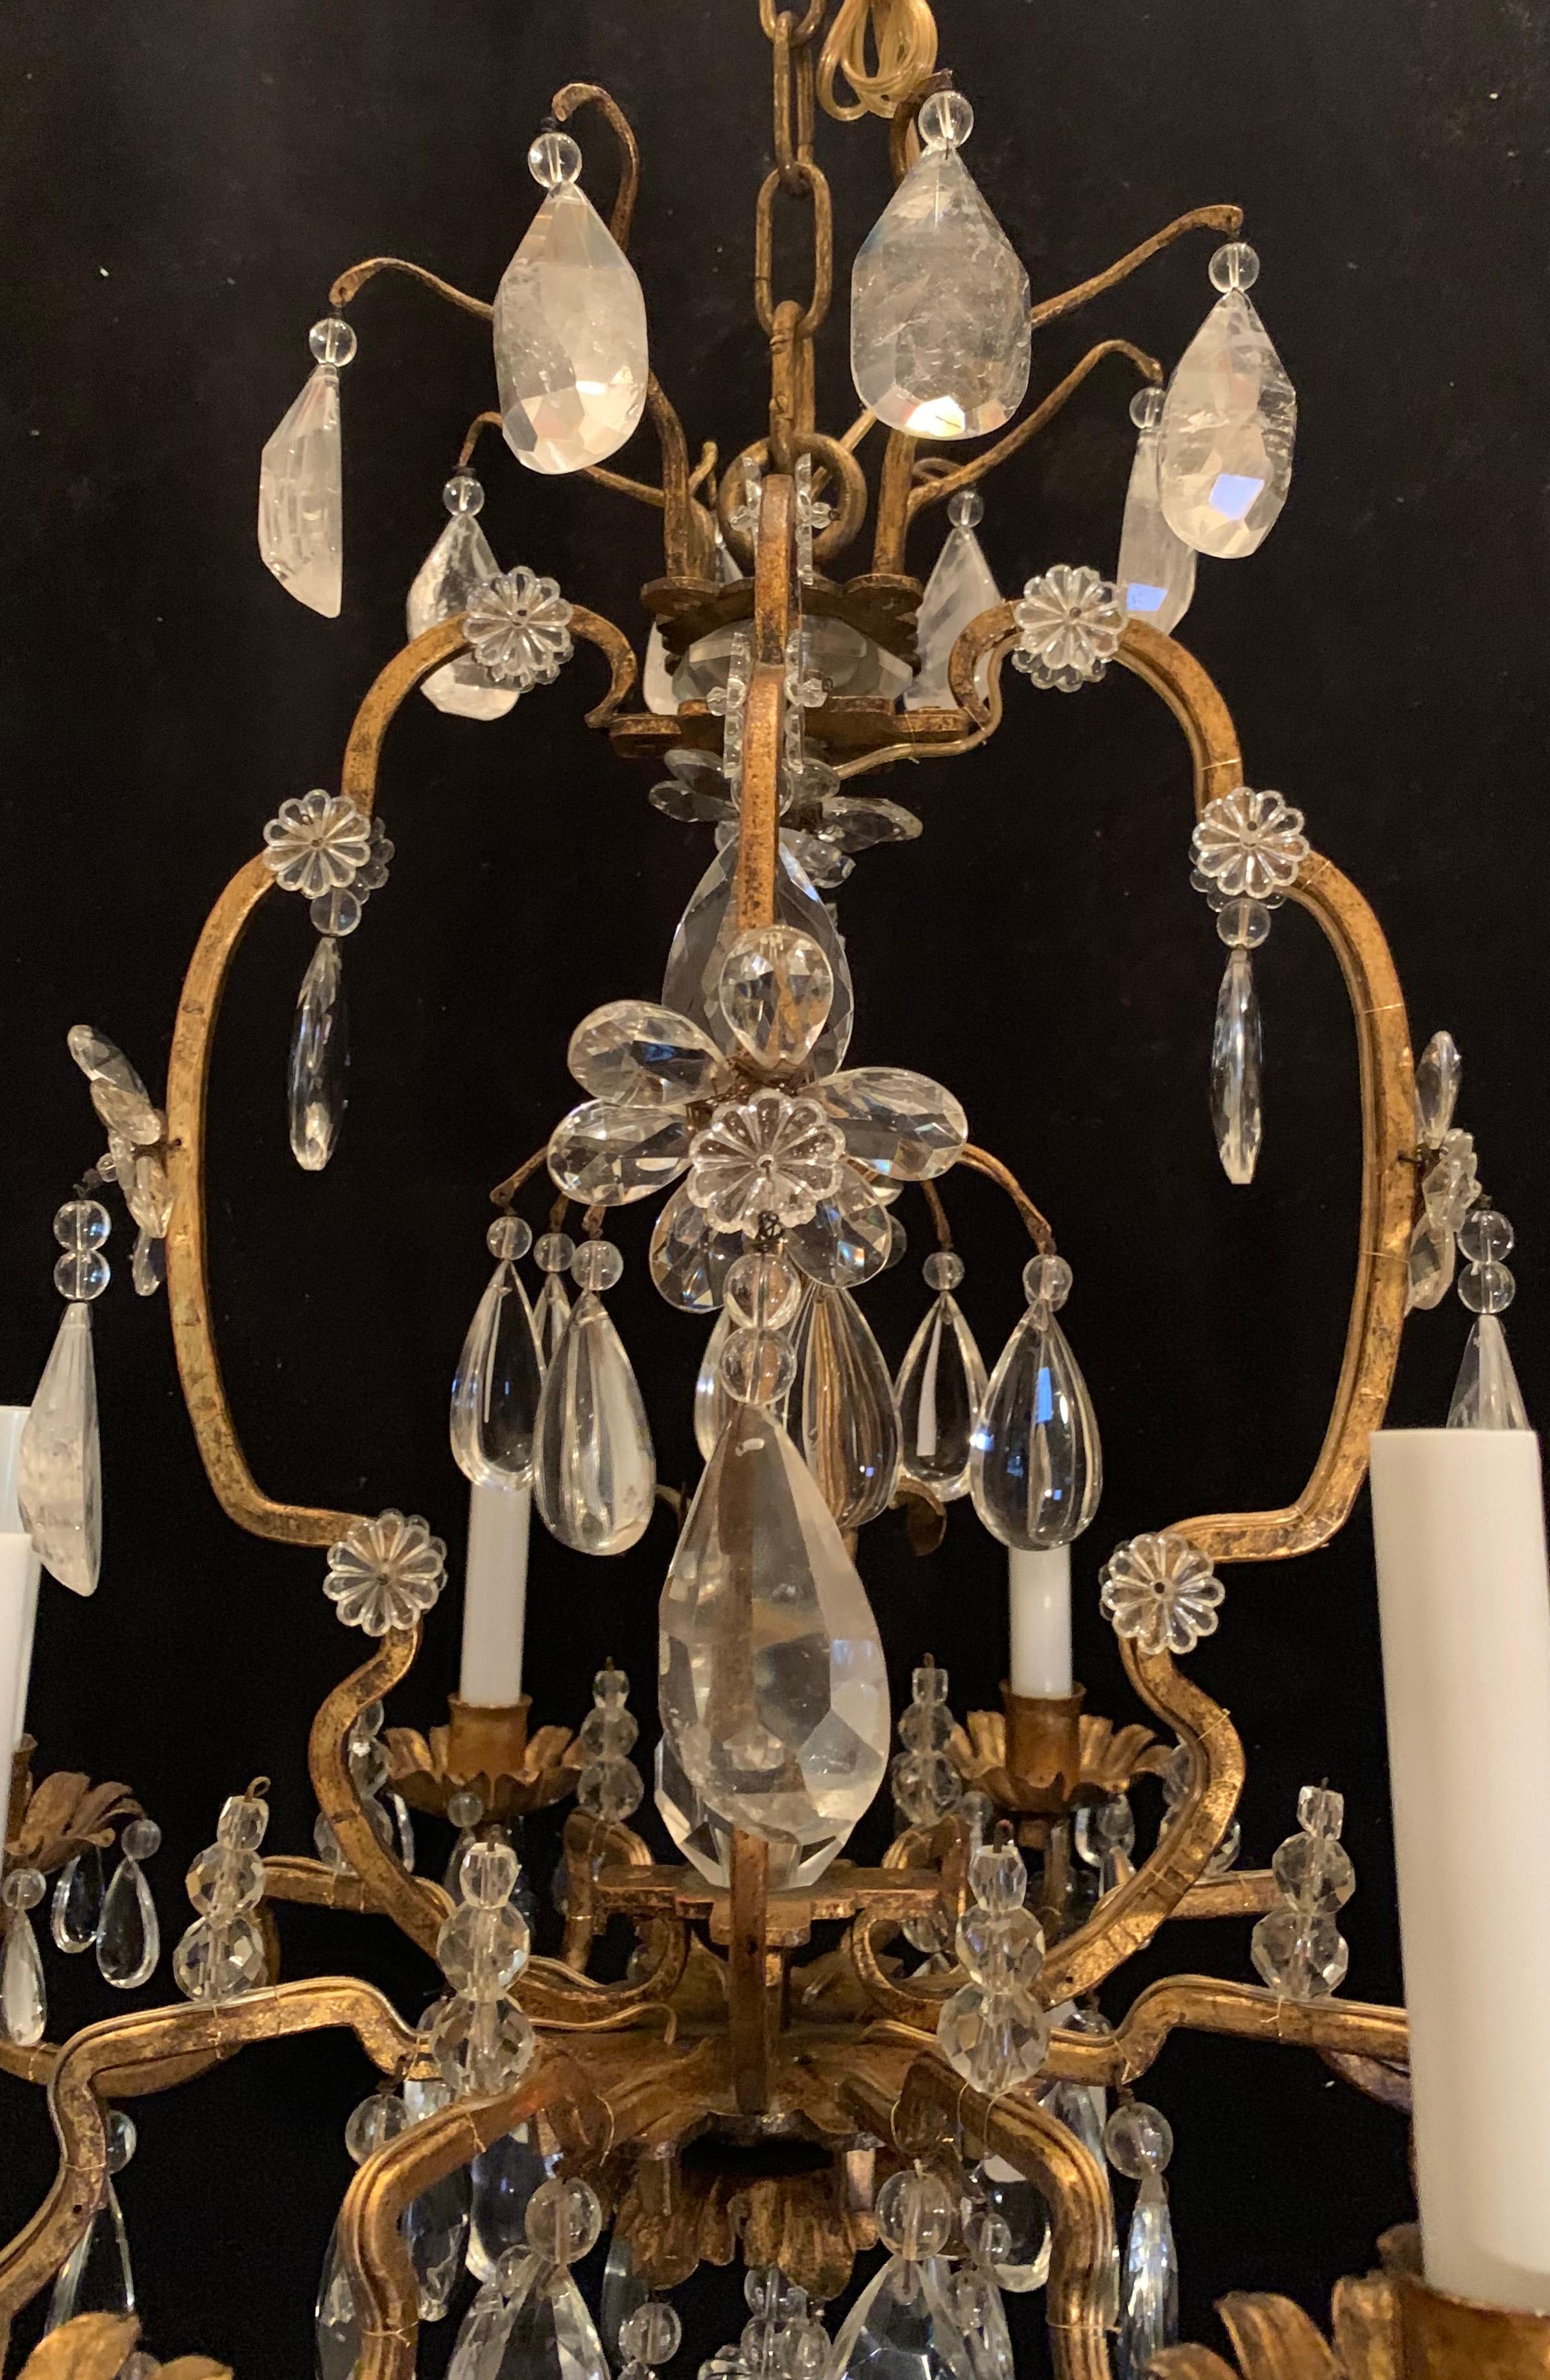 Un merveilleux lustre en cristal de roche et dorure Baguès / Louis XVI à 8 chandeliers, en forme de cage d'oiseau, entièrement recâblé avec de nouvelles douilles.